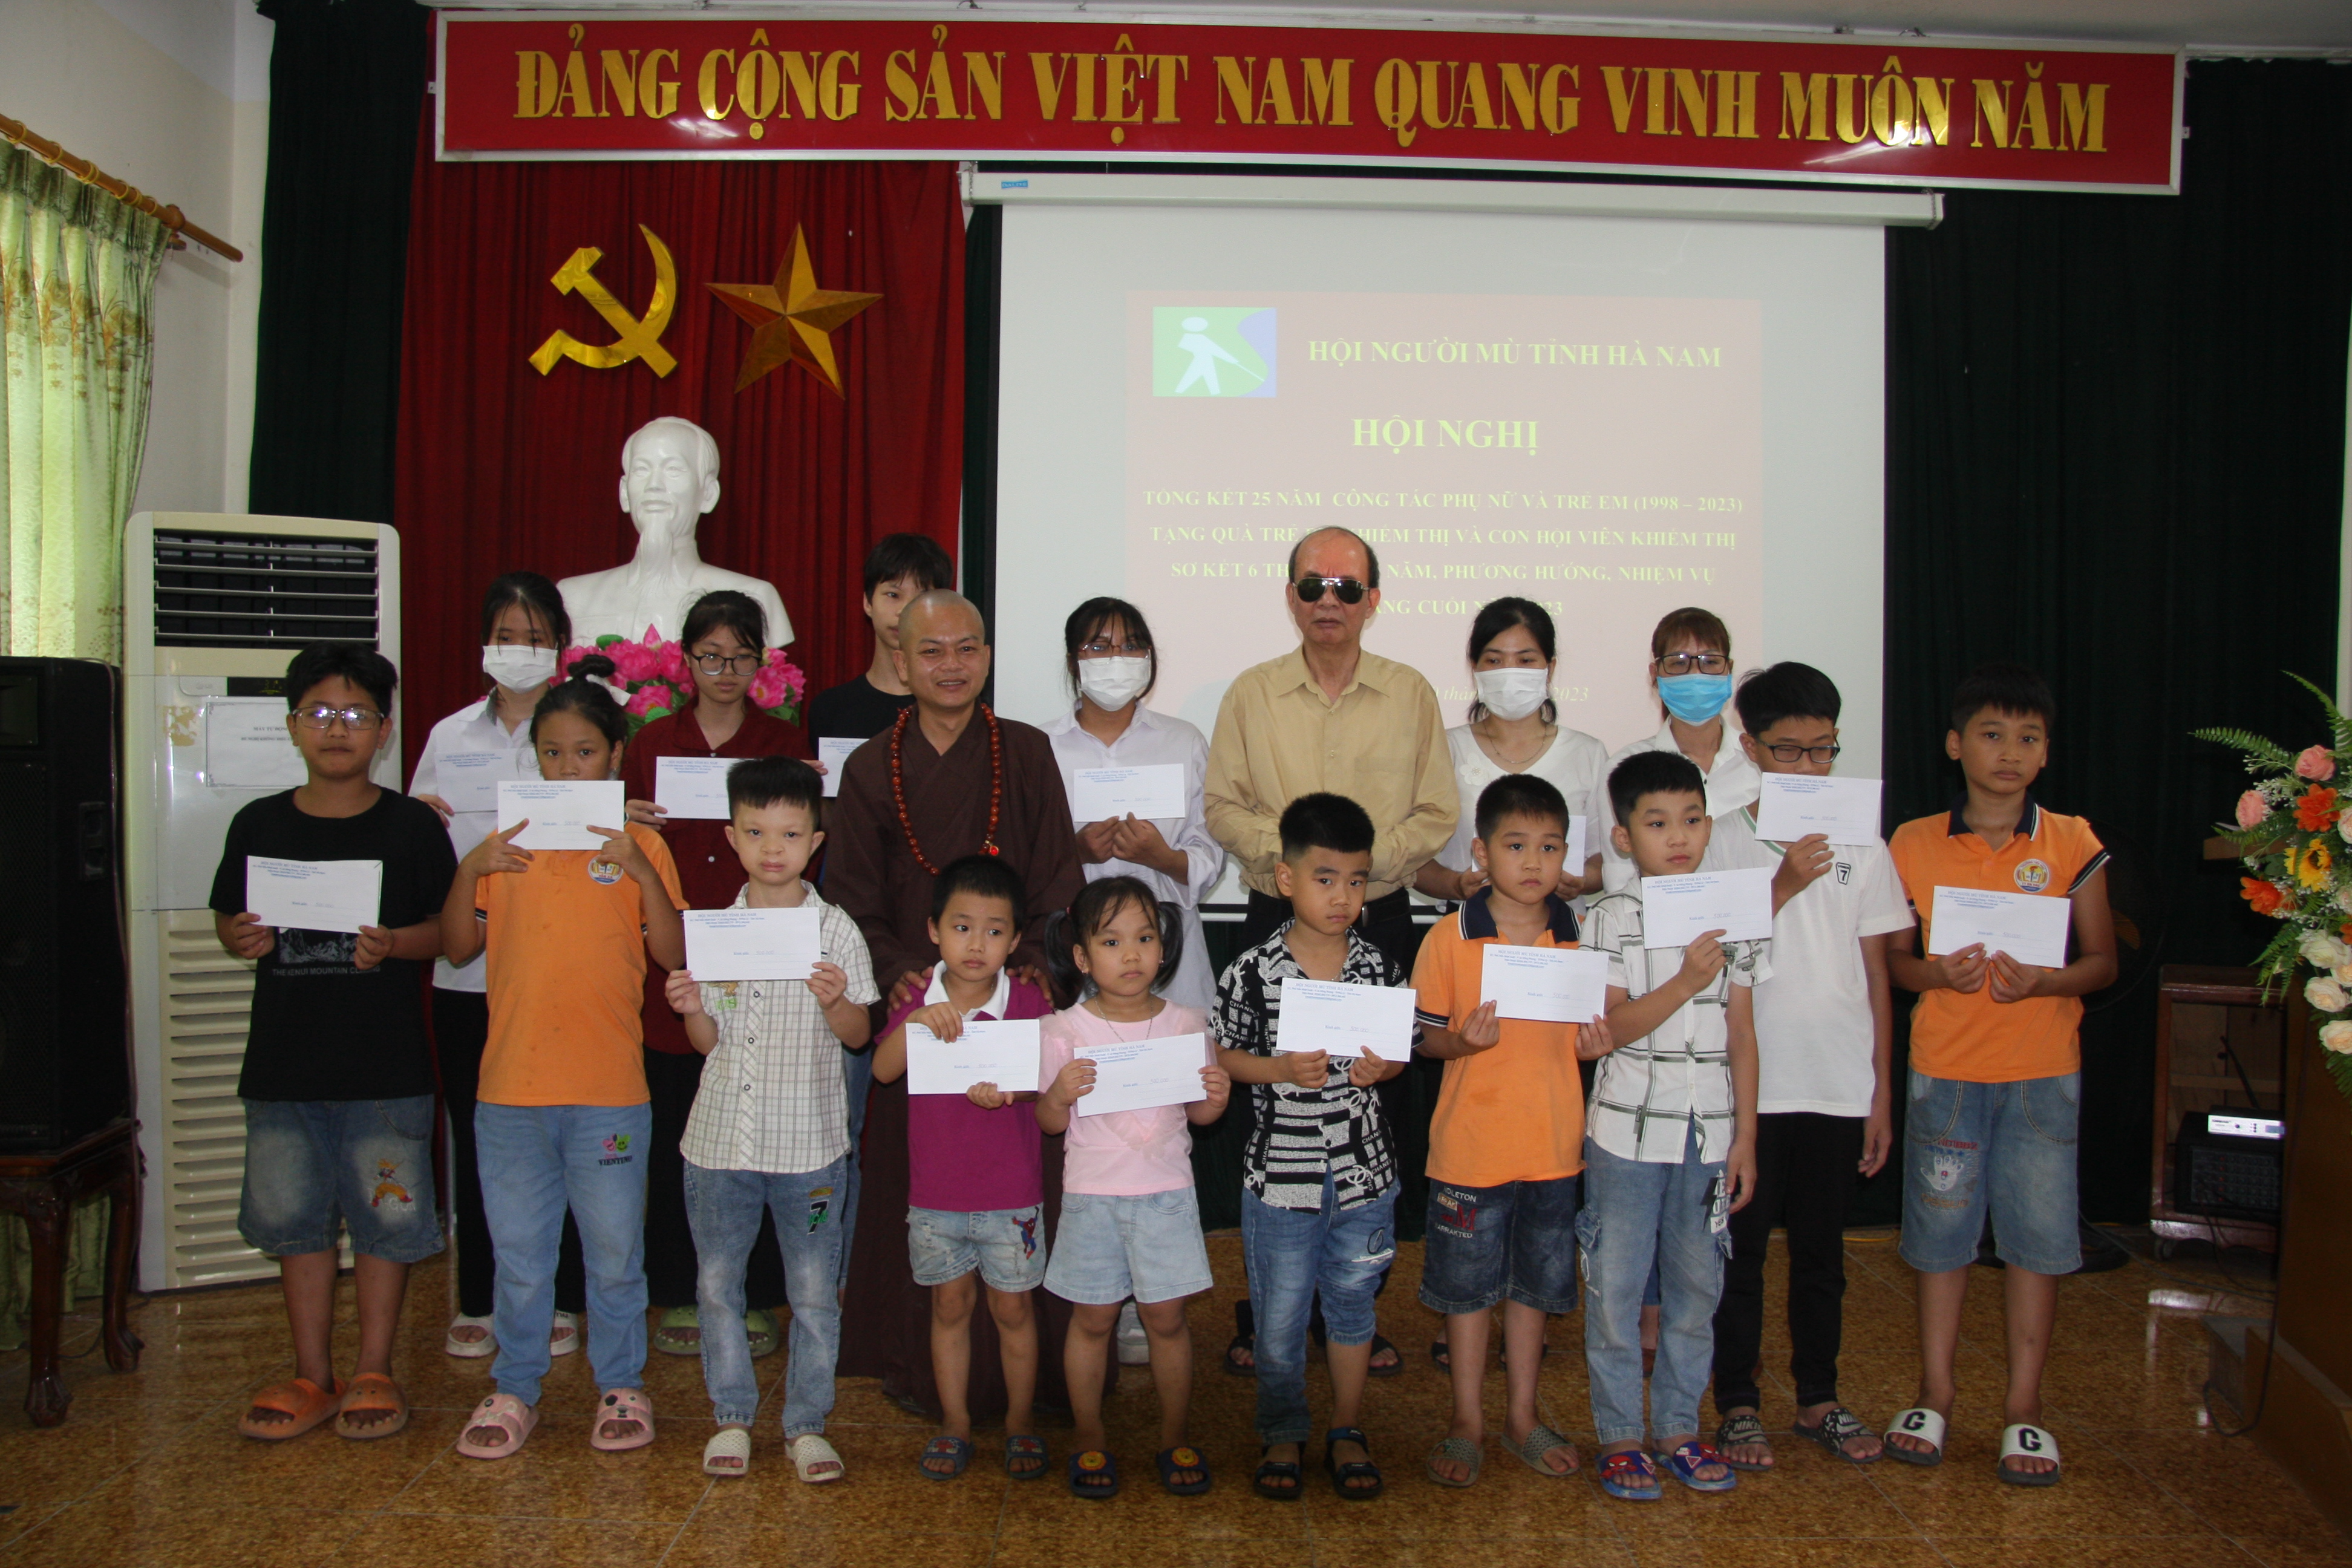 Hình ảnh:  Hội Người mù tỉnh Hà Nam tổng kết 25 năm công tác phụ nữ và trẻ em